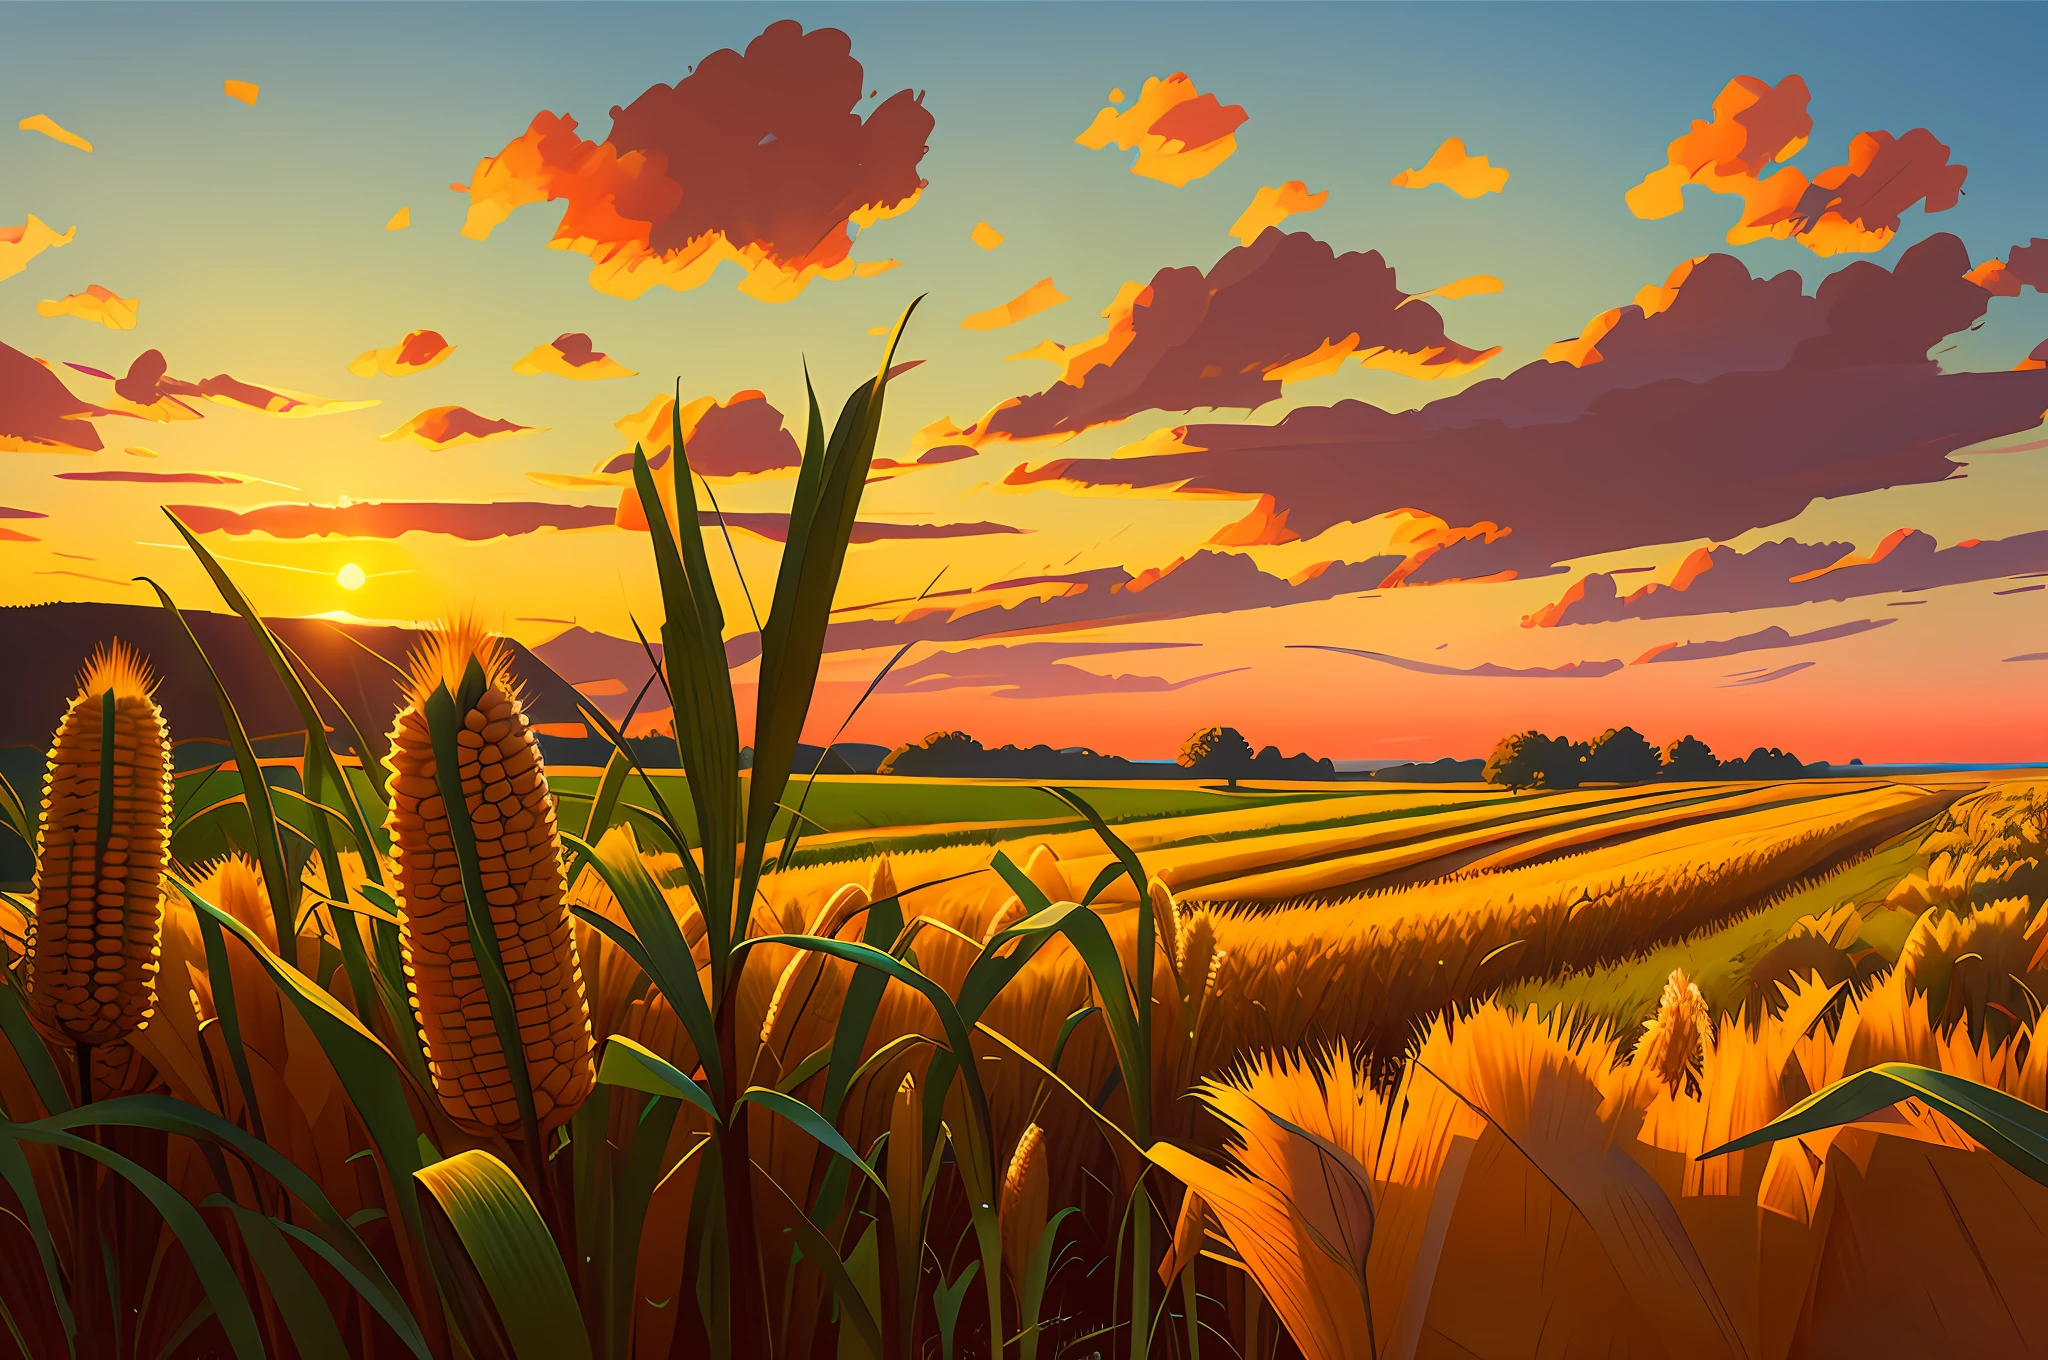 кукурузное поле с зернами на переднем плане, Позднее лето, красивое цветное небо, гиперреалистичный цифровой концепт-арт с резкими грубыми мазками. концепт-арт в стиле Эдварда Хоппера и Пиксара.